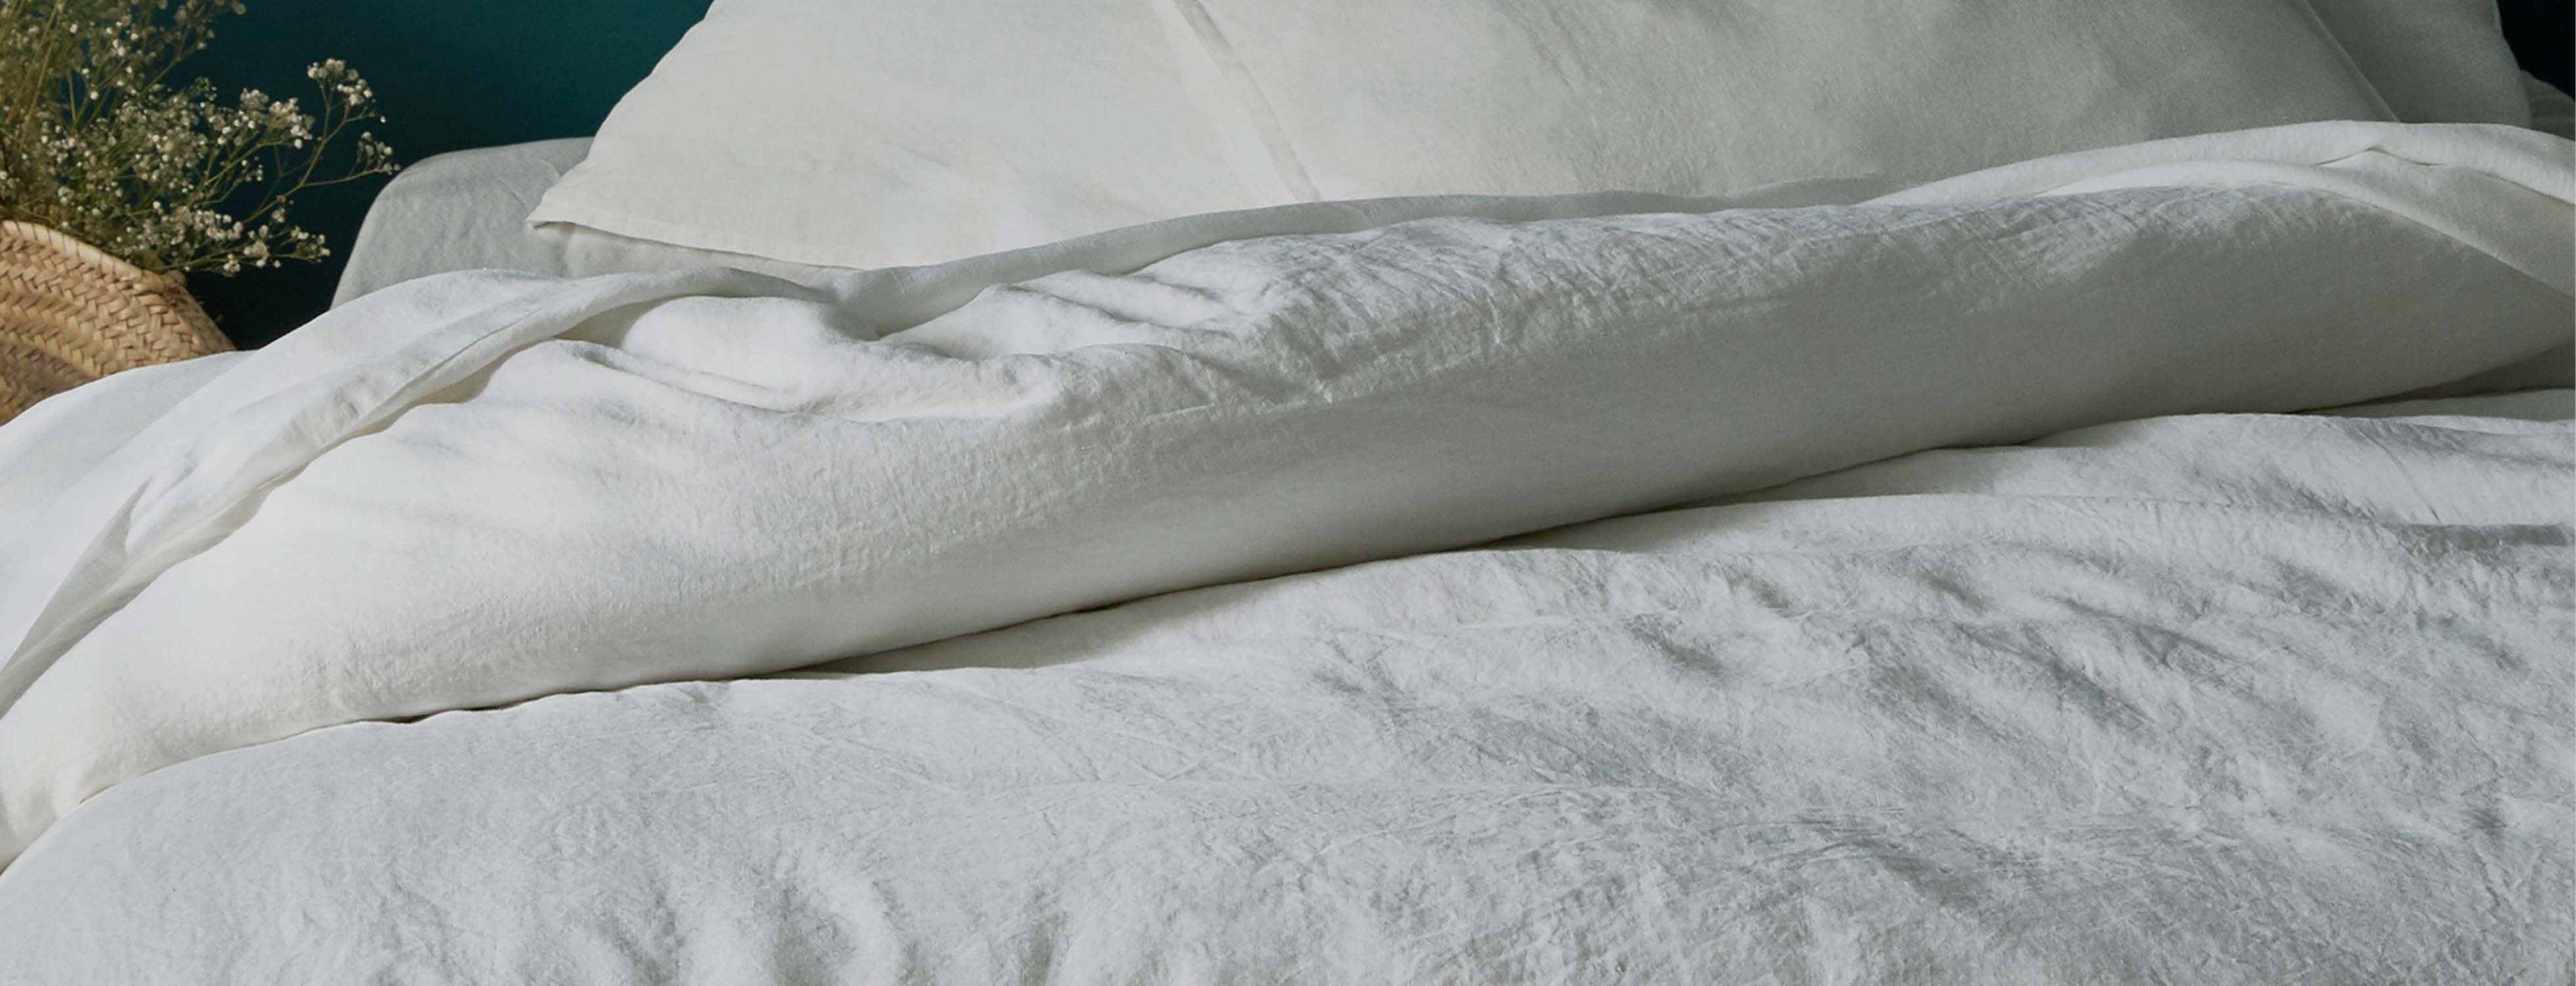 Linge de lit en lin Vence, achat en ligne | alinea.com